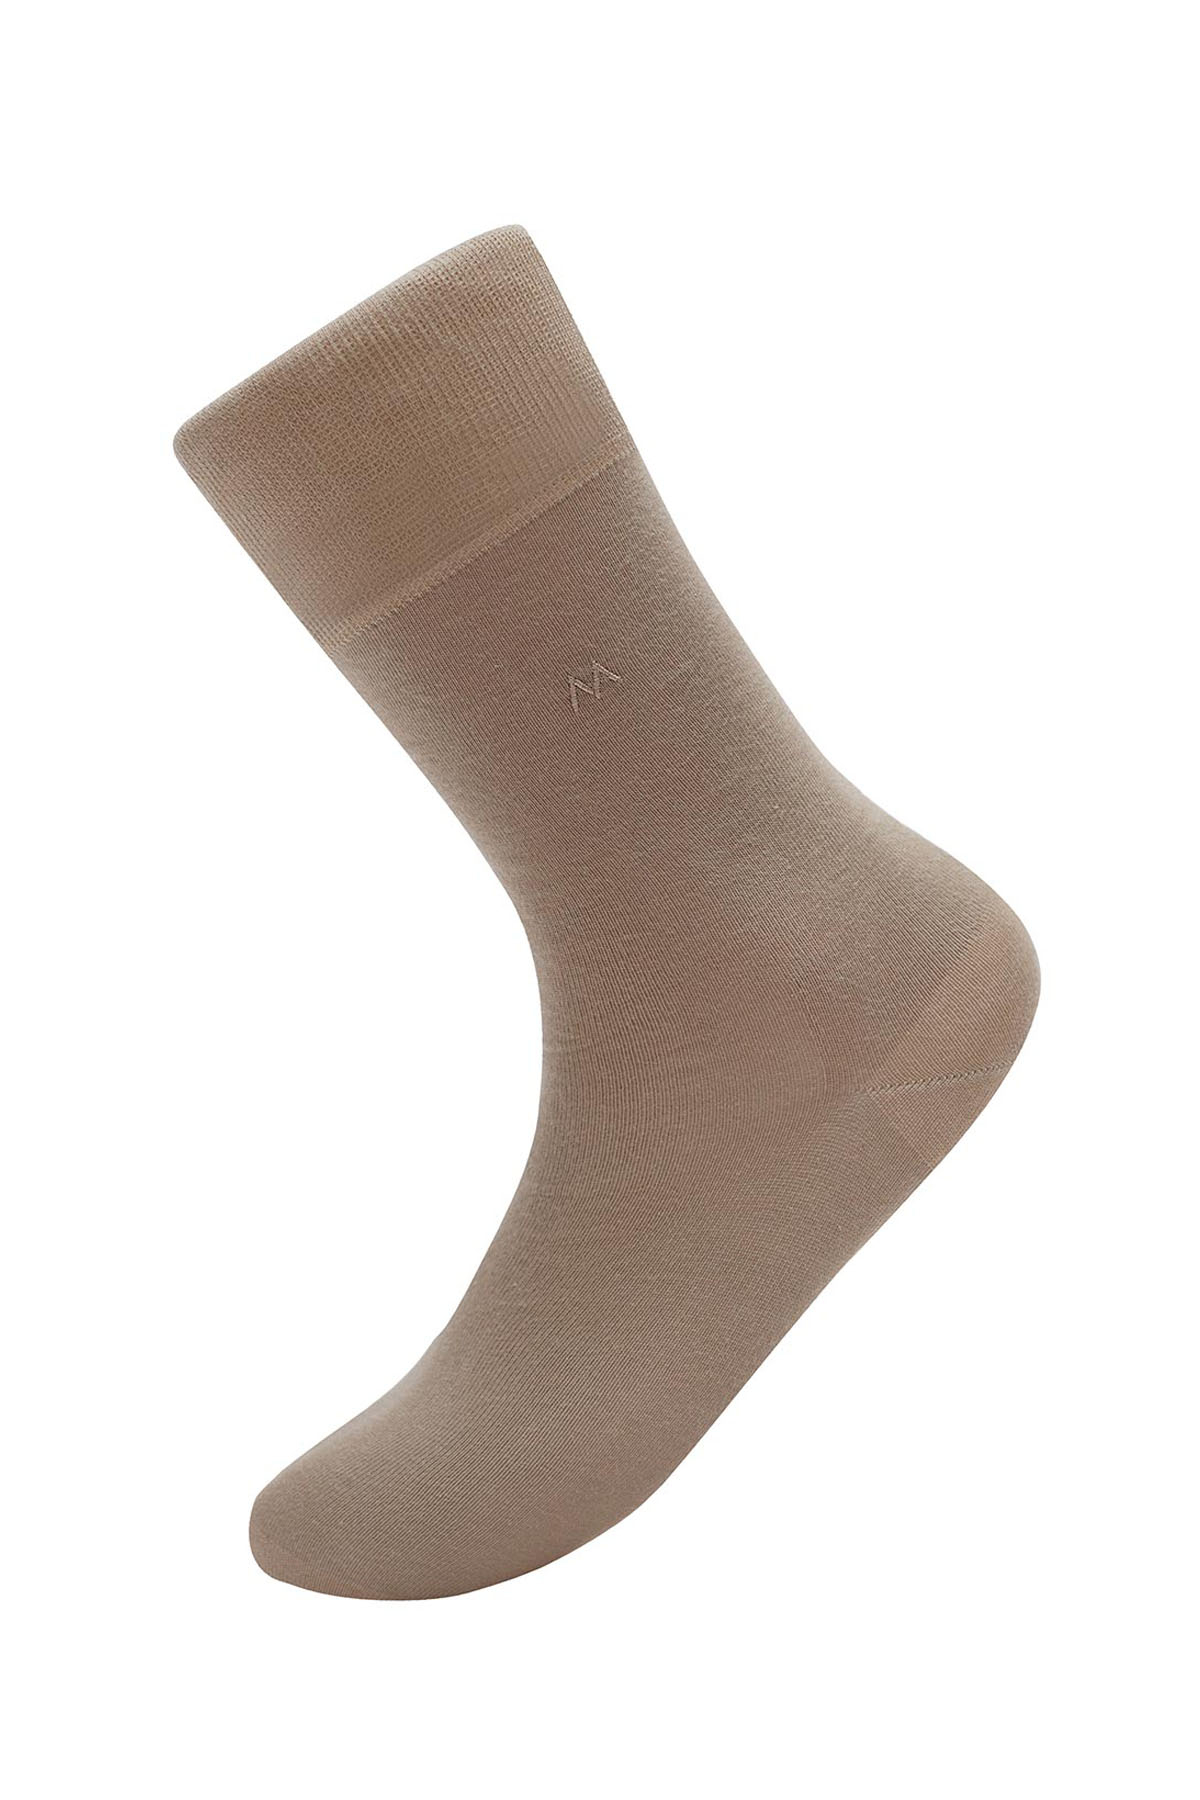 Kum Rengi Pamuklu Yazlık Çorap